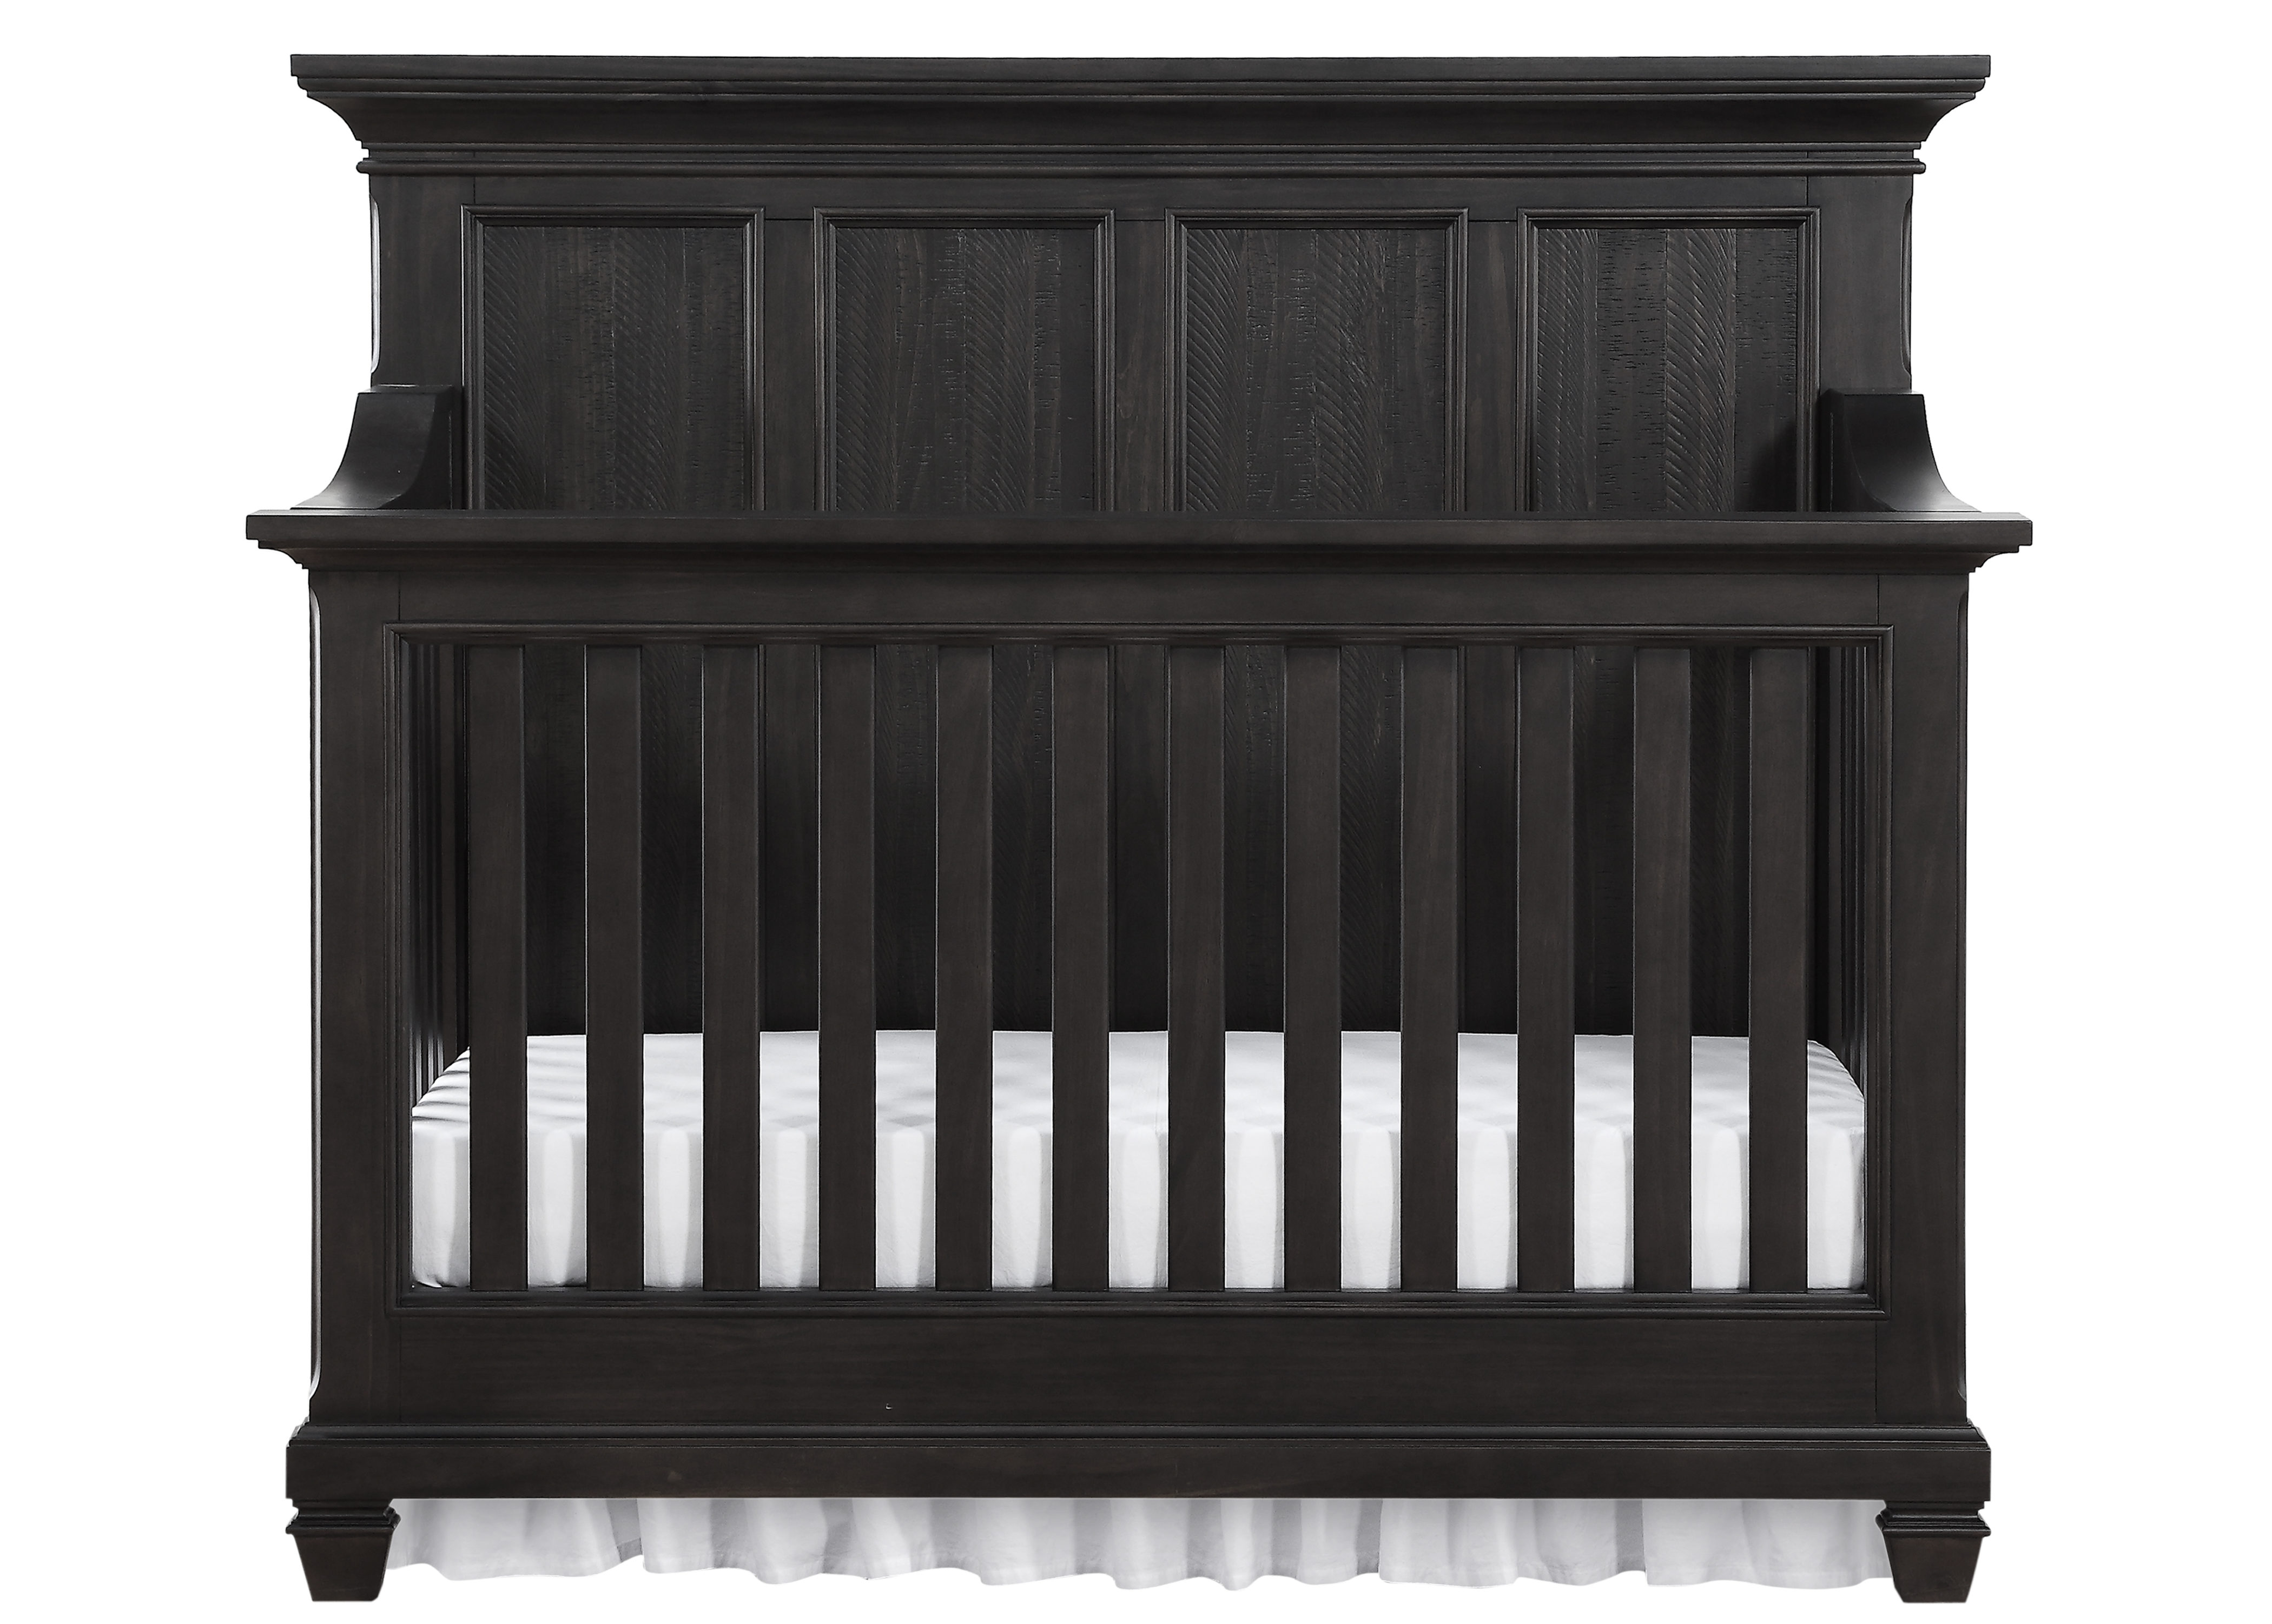 Bertini Nashville Knox Crib, Dark Crib, Transitional Crib, 4-in-1 Convertible Crib